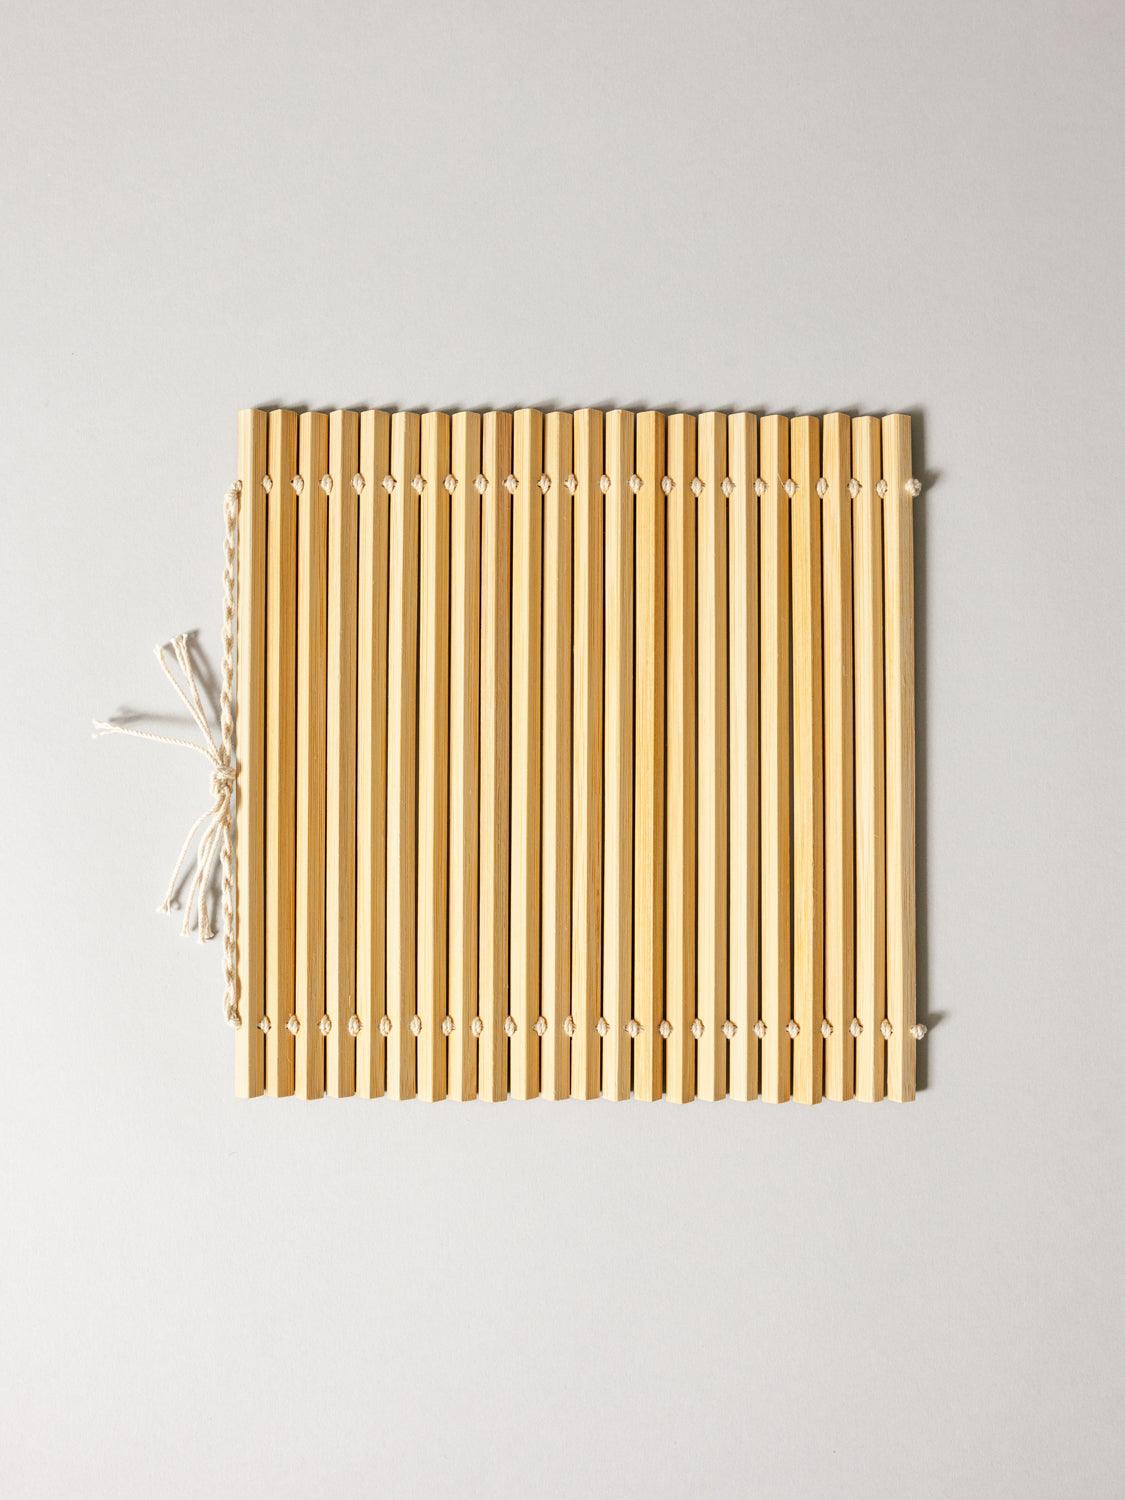 Wakita Bamboo Rolling Mat